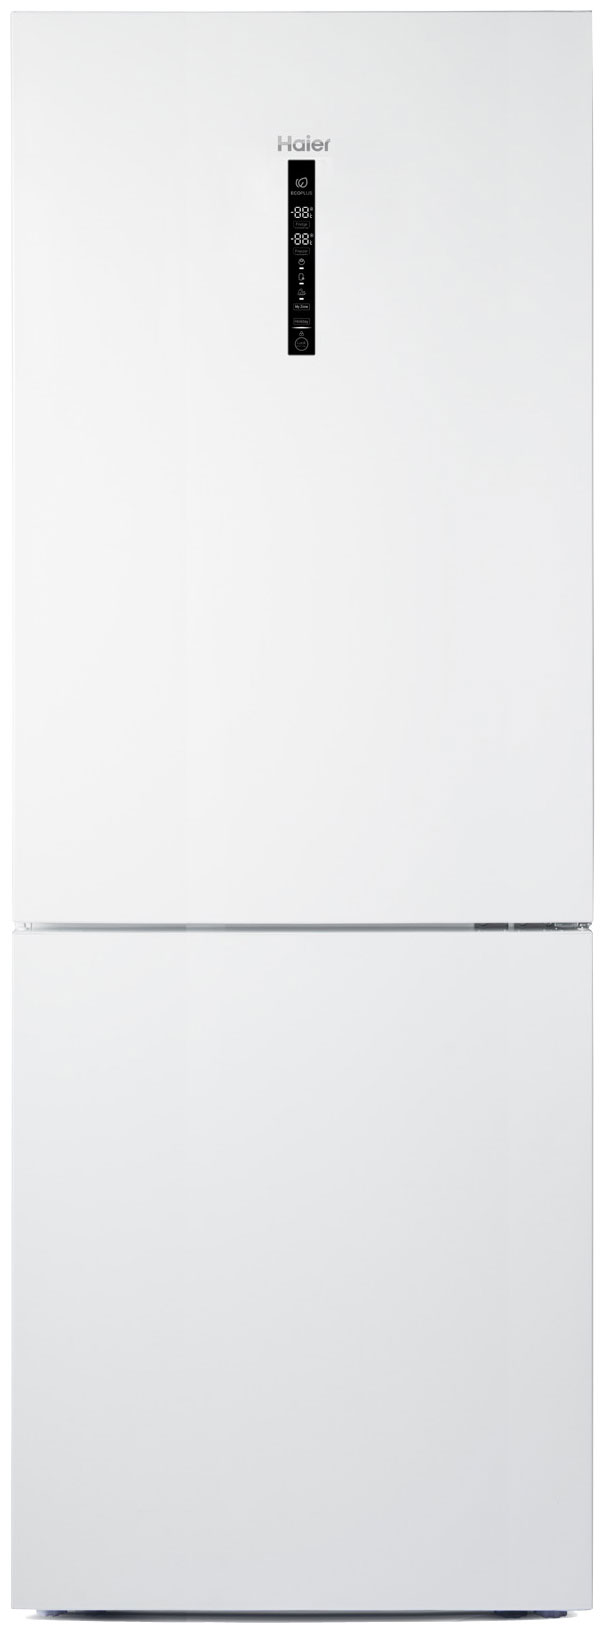 Двухкамерный холодильник Haier C4F 744 CWG встраиваемый двухкамерный холодильник haier hrf310wbru